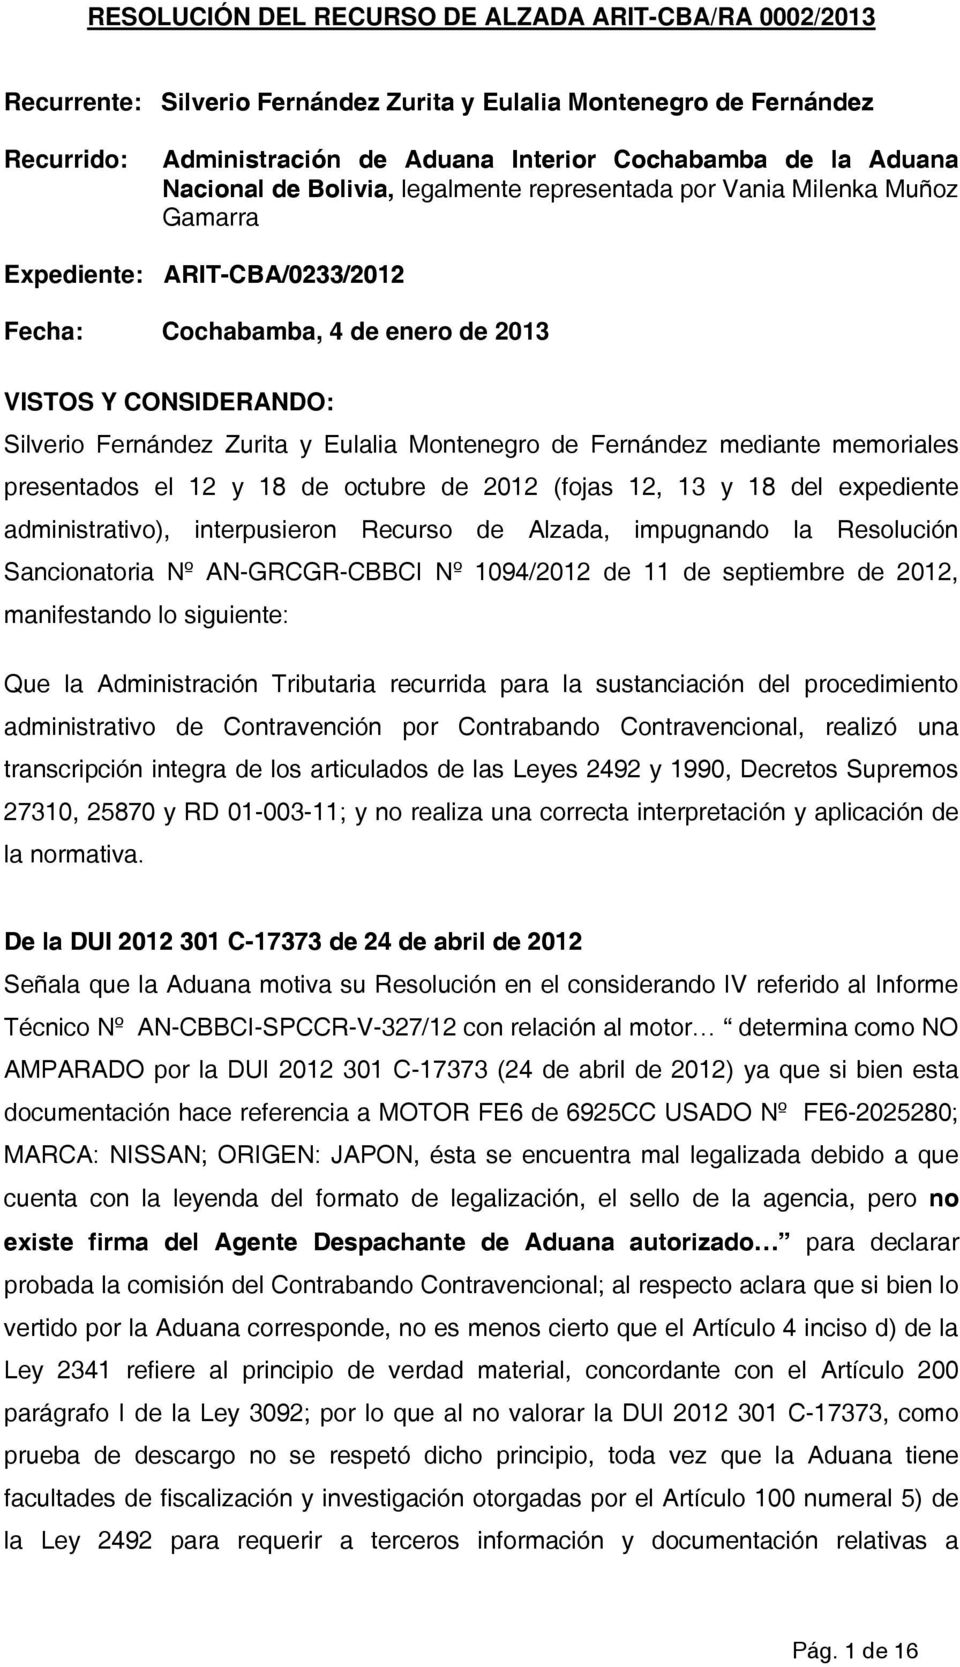 Eulalia Montenegro de Fernández mediante memoriales presentados el 12 y 18 de octubre de 2012 (fojas 12, 13 y 18 del expediente administrativo), interpusieron Recurso de Alzada, impugnando la